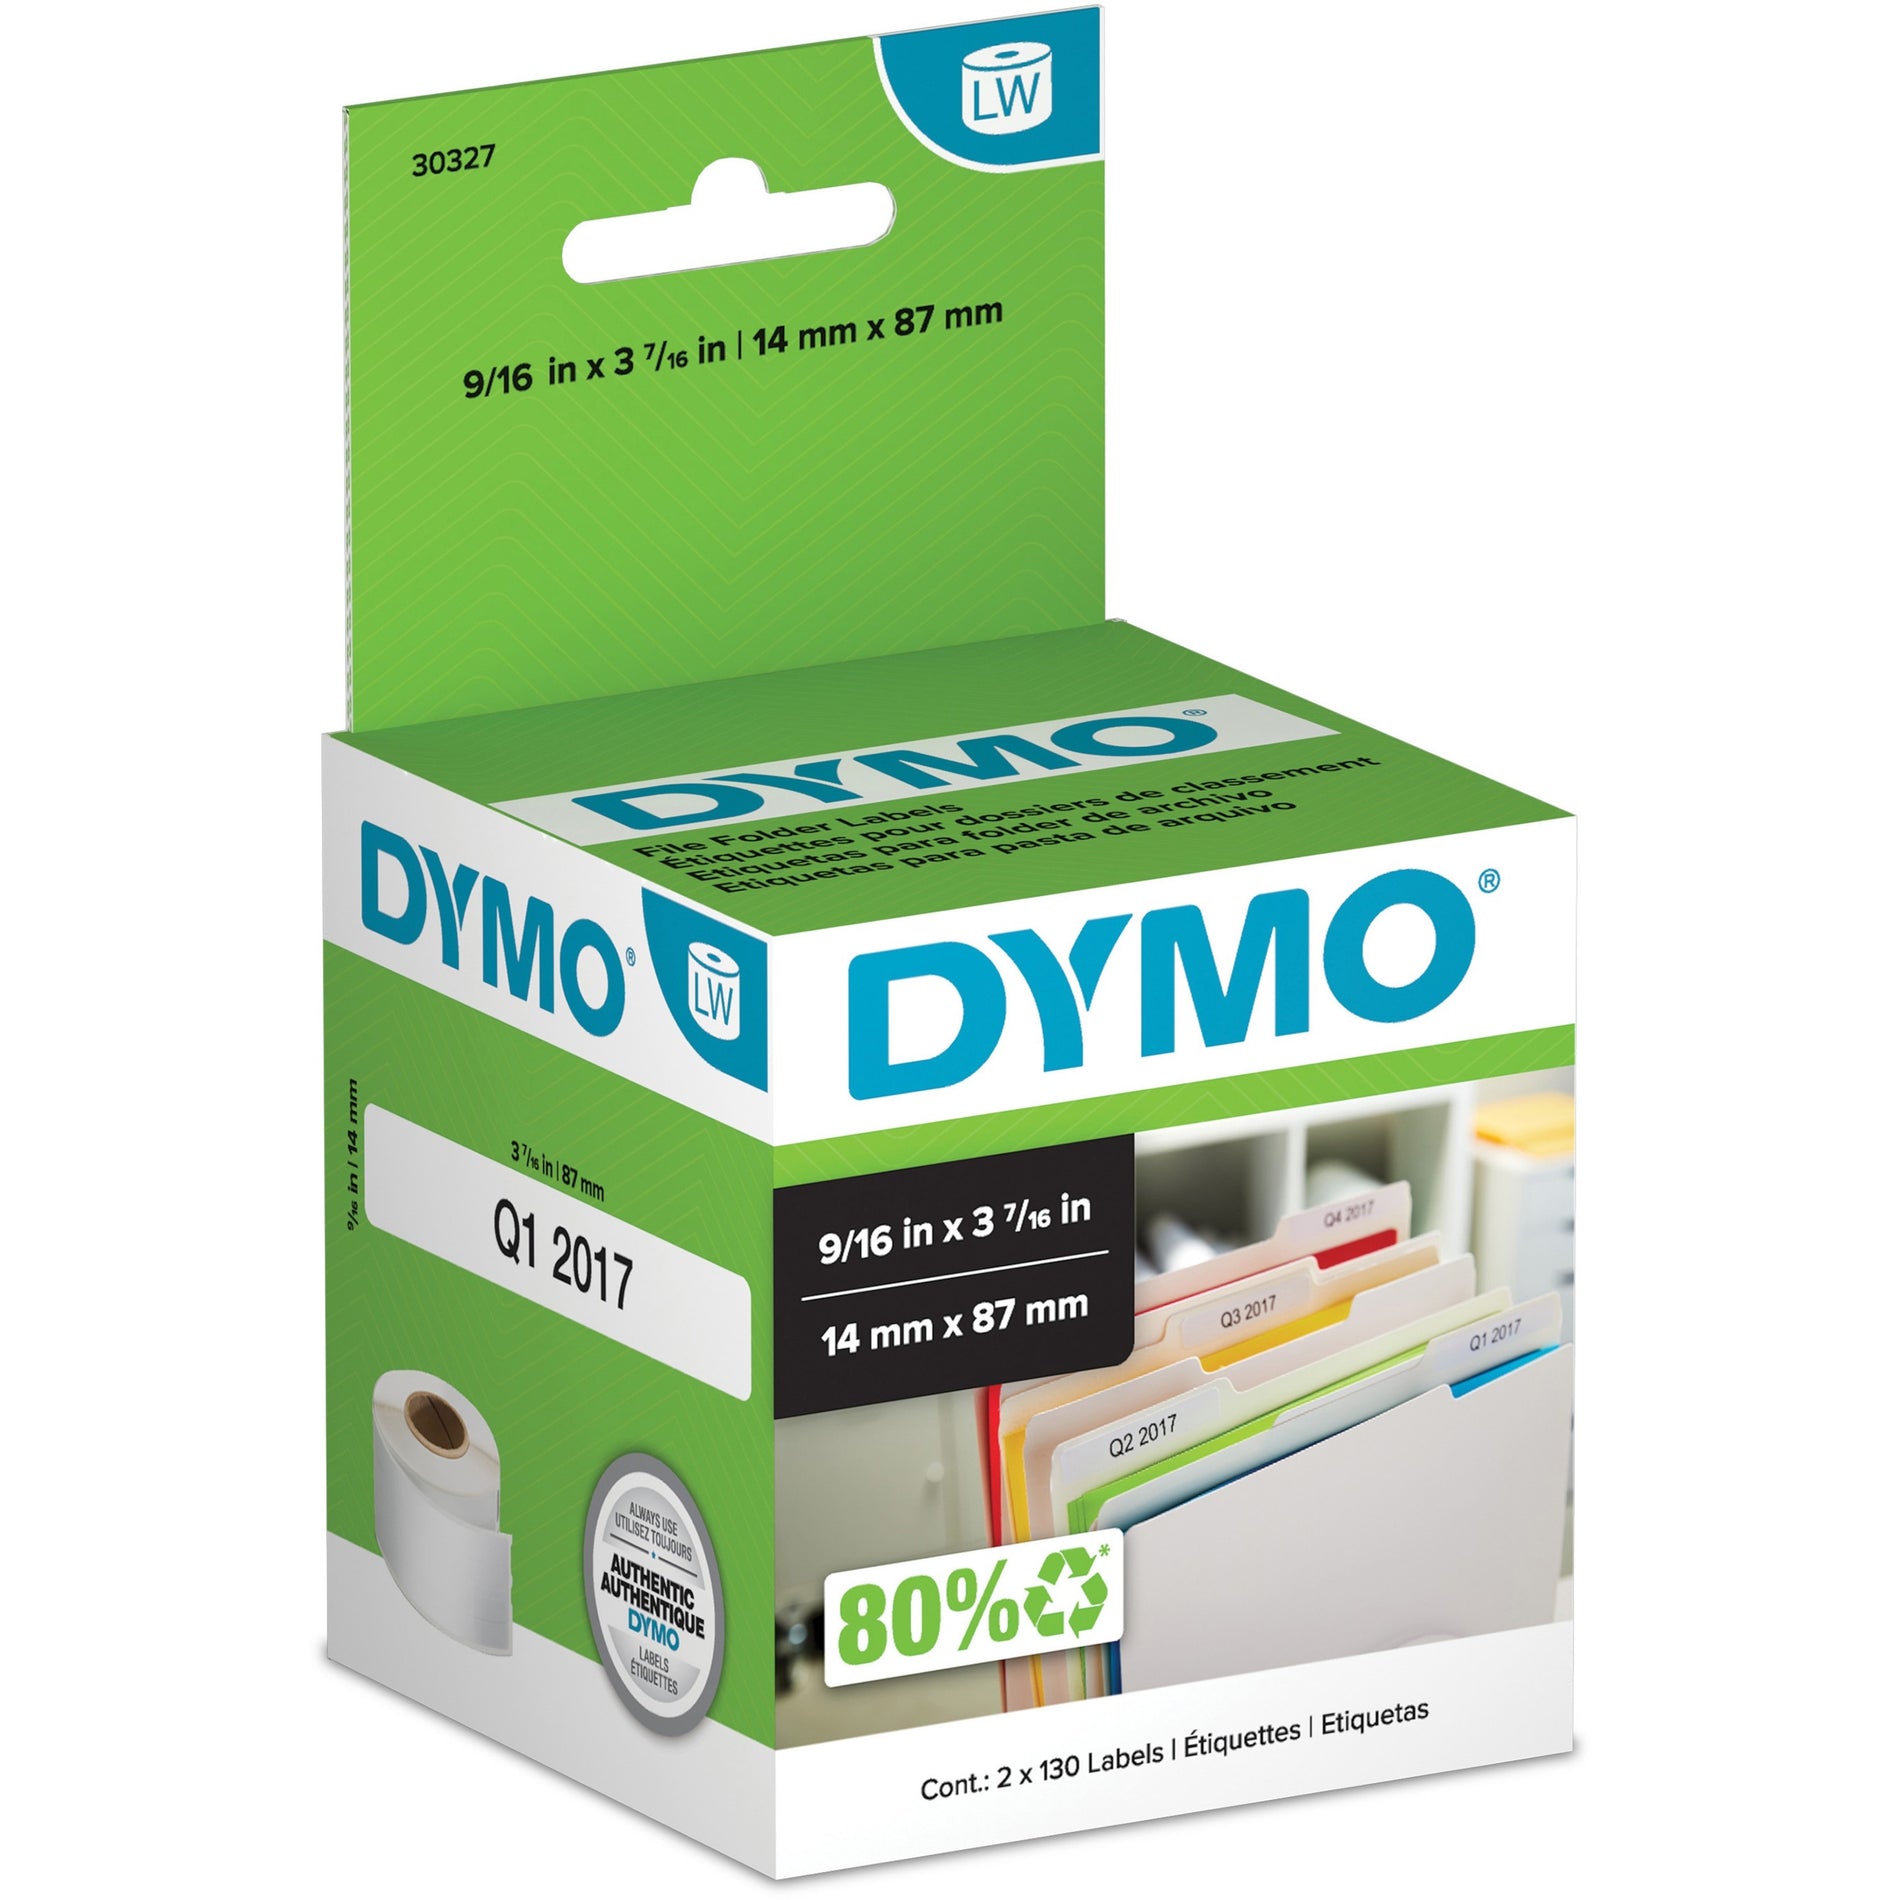 Dymo 30327 Labelwriter File Folder Labels, 260 Labels per Box, 9/16" x 3 7/16", White